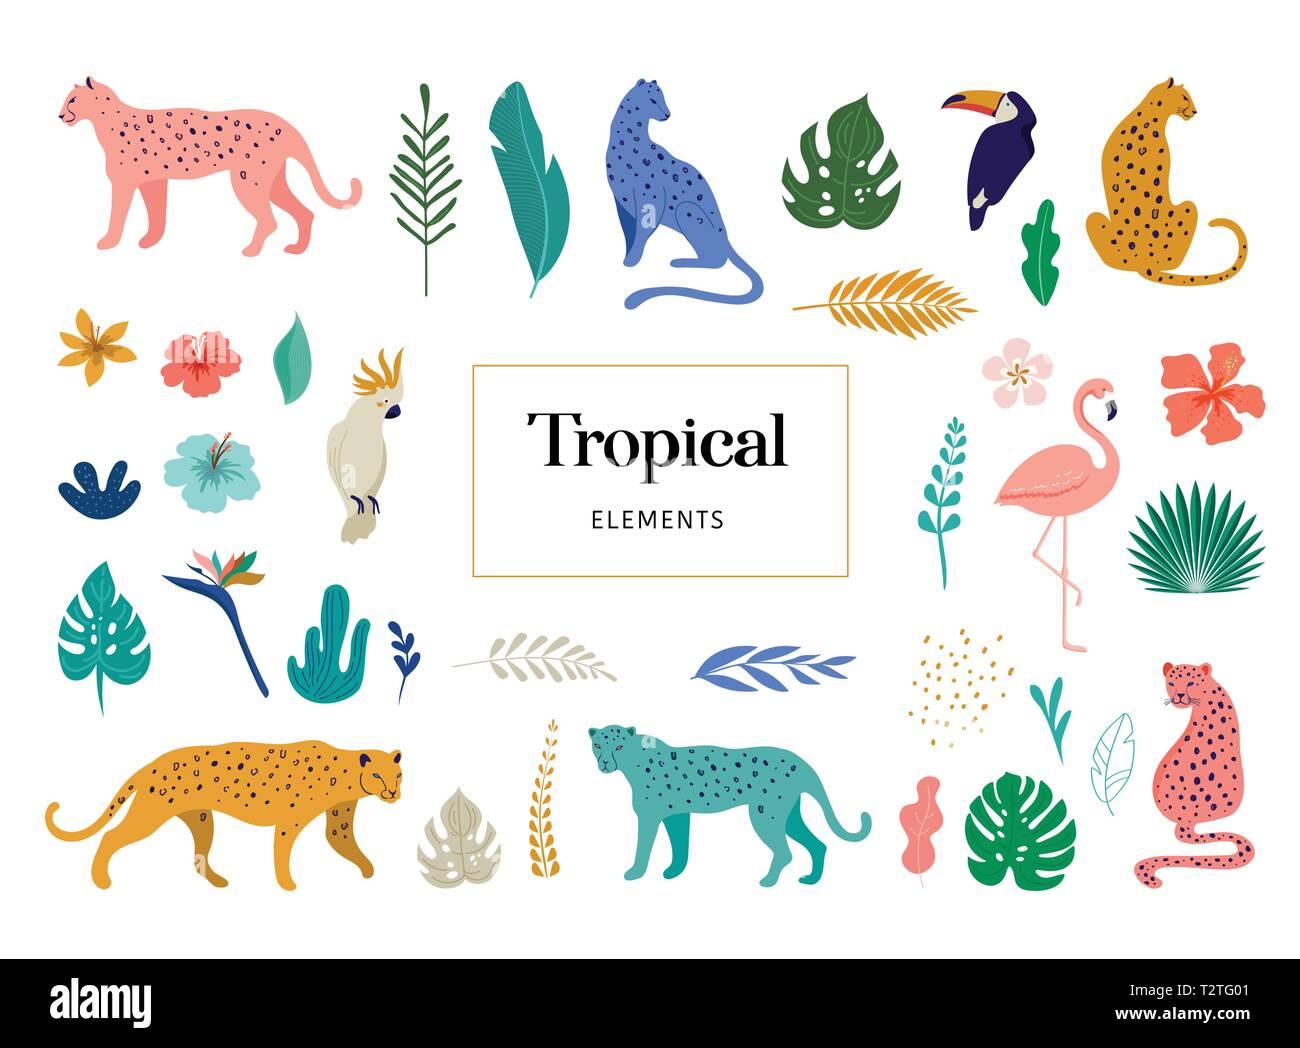 Tropical animali esotici e uccelli - leopardi, tigri, pappagalli e tucani illustrazione vettoriale. Animali selvatici nella giungla, foresta pluviale Illustrazione Vettoriale